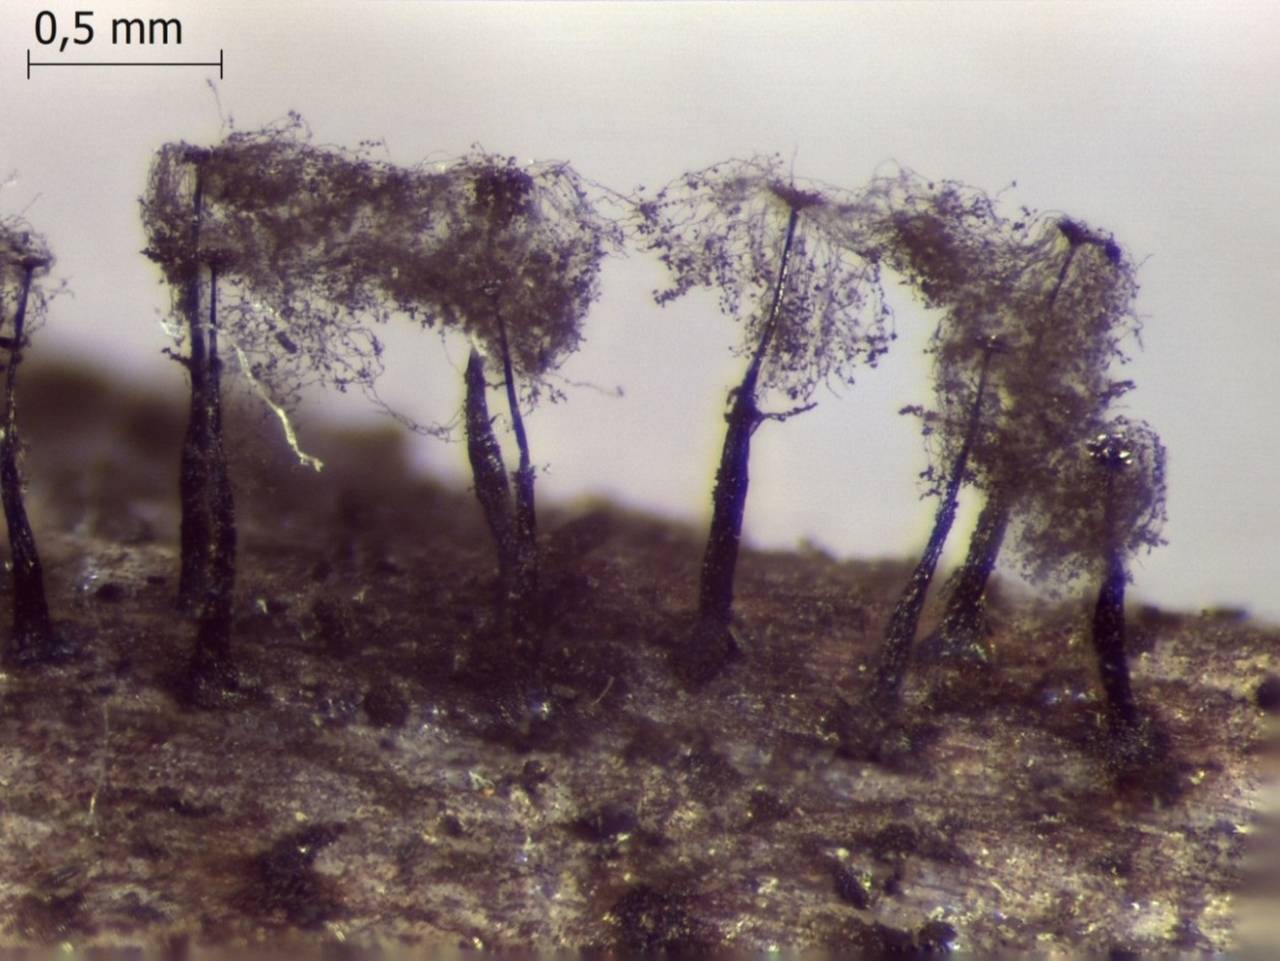 Enerthenema papillatum внешний вид спороношения после рассеивания спор, Нелидовский, Tver Oblast (Russia)